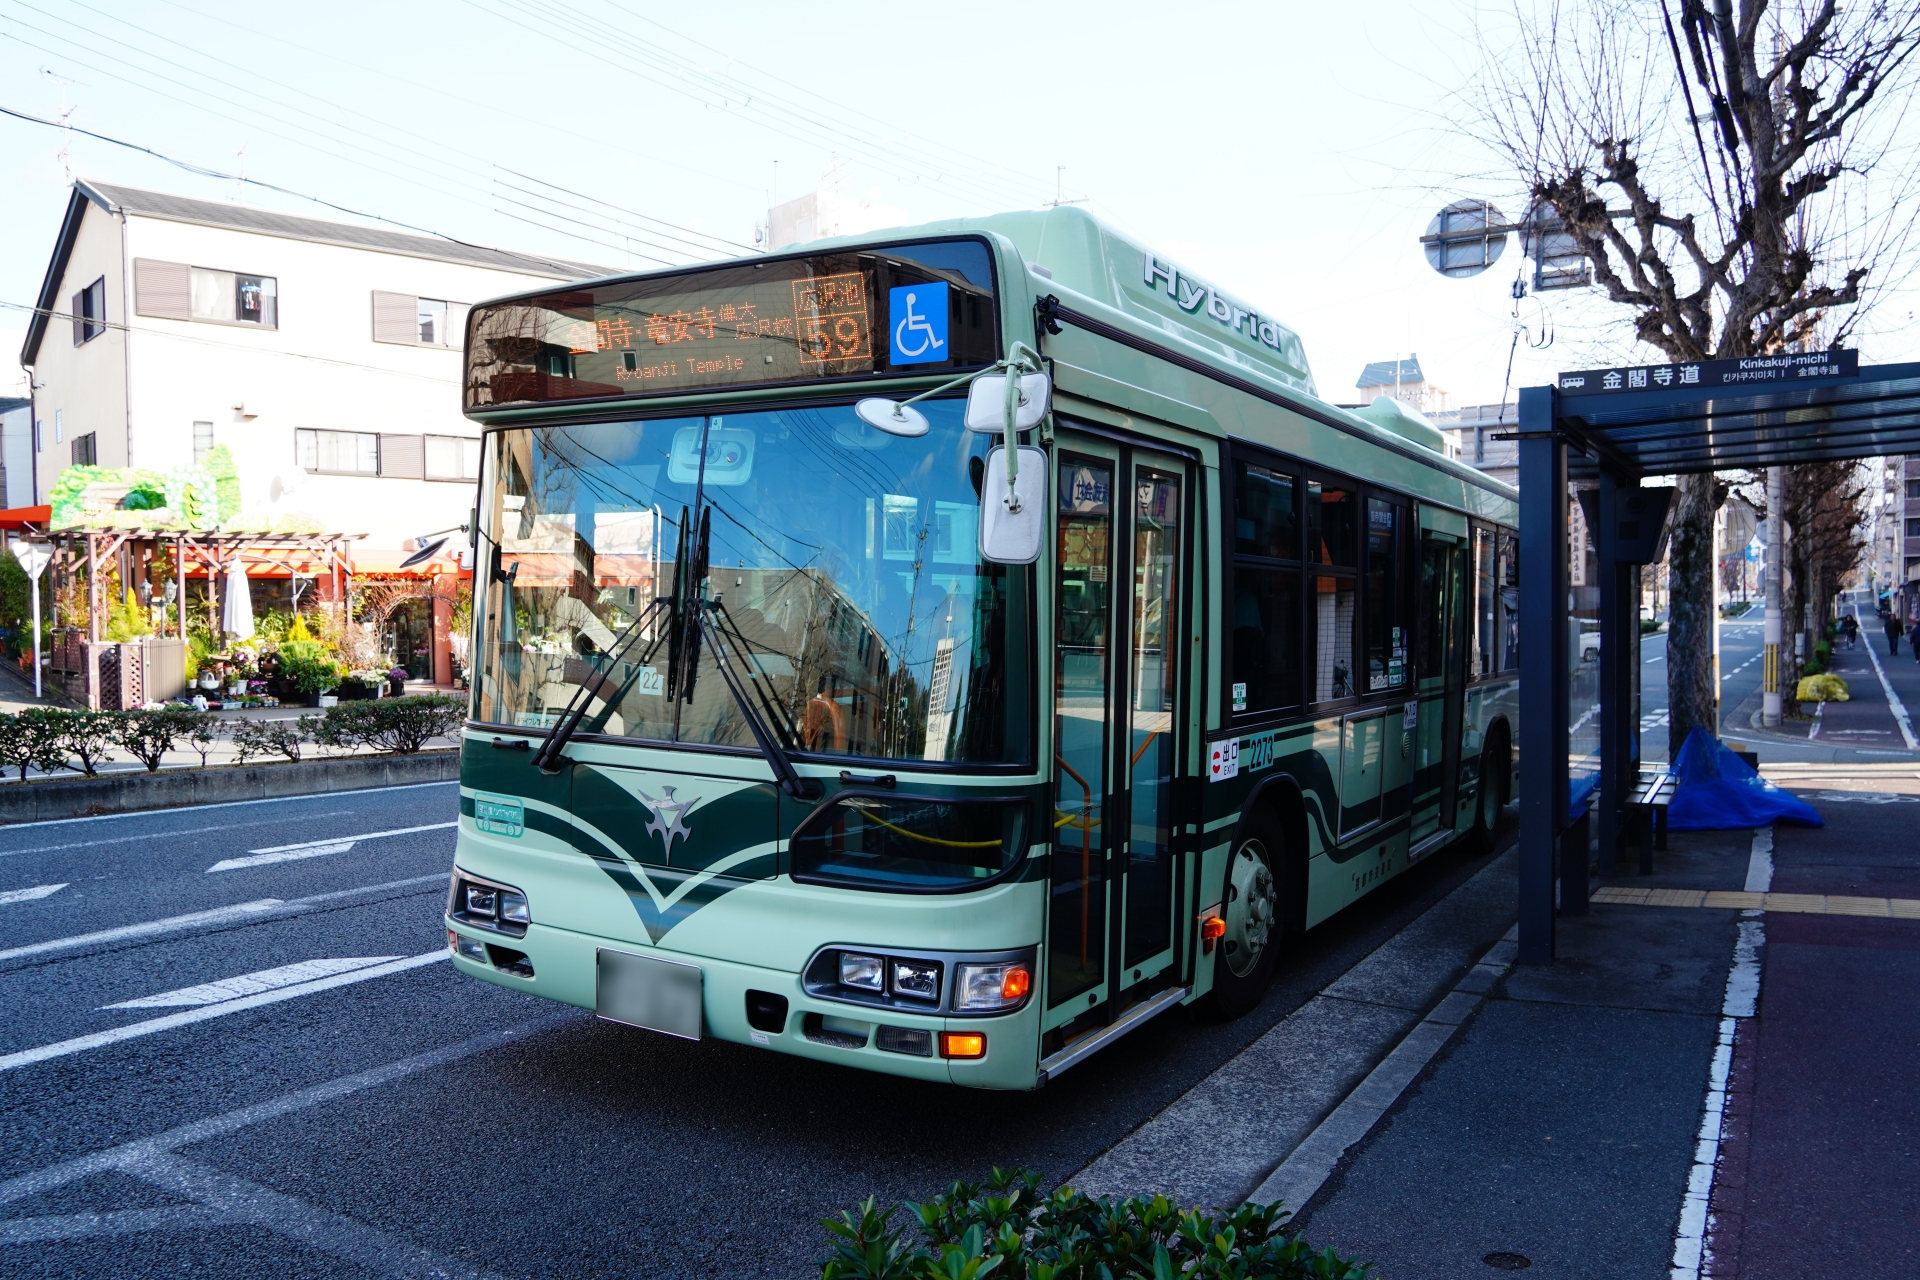 Bus in Japan 